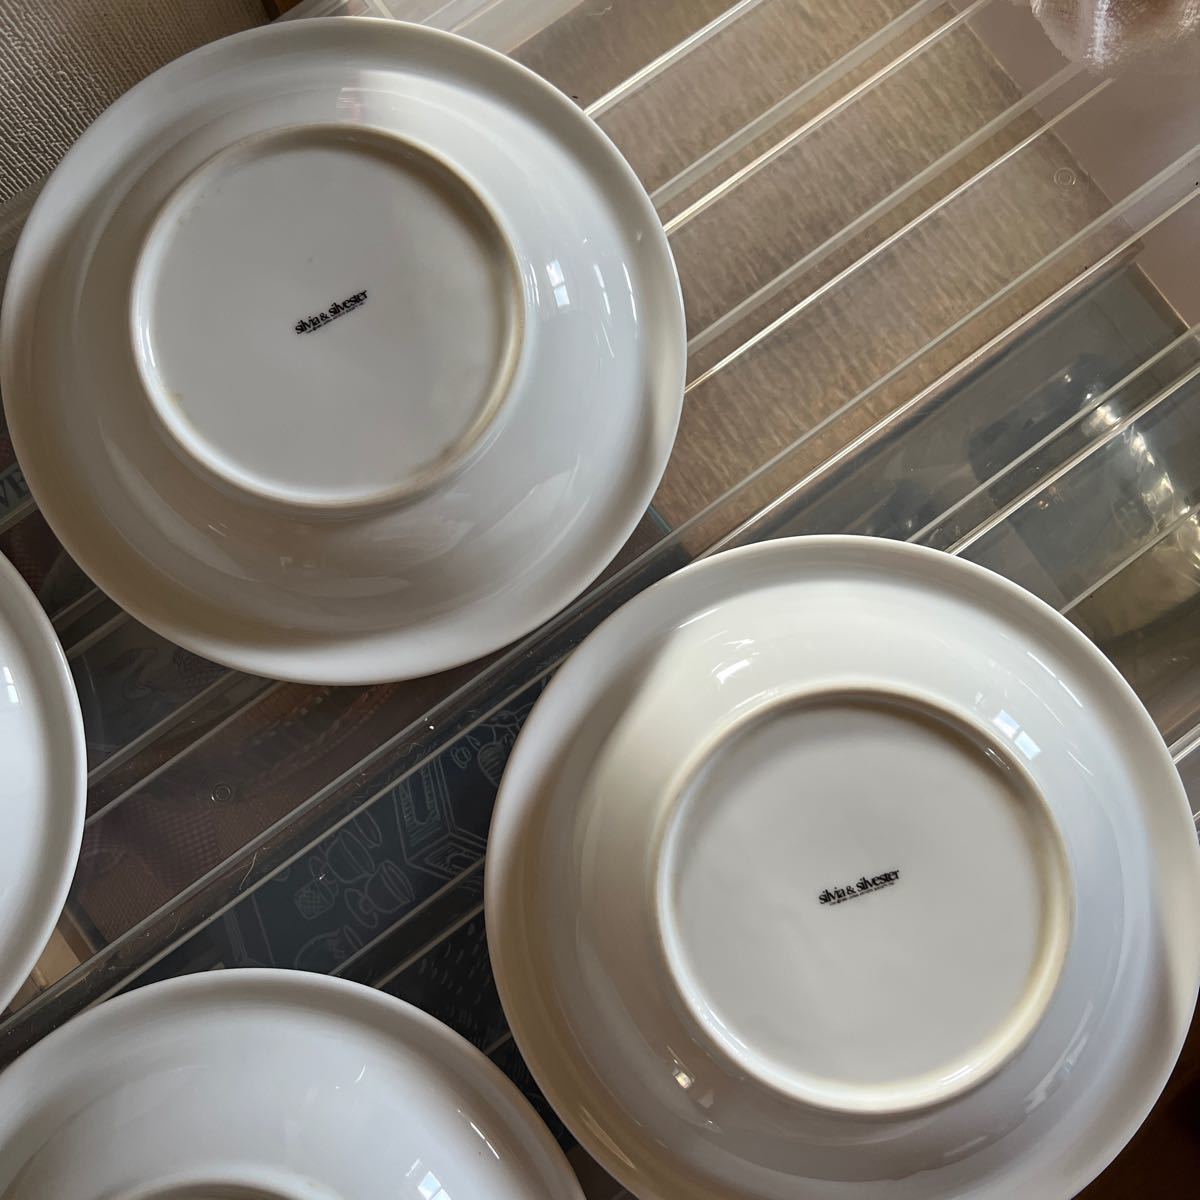 昭和 レトロ 猫 食器 カレー皿 皿 silvia &silvester パスタ皿